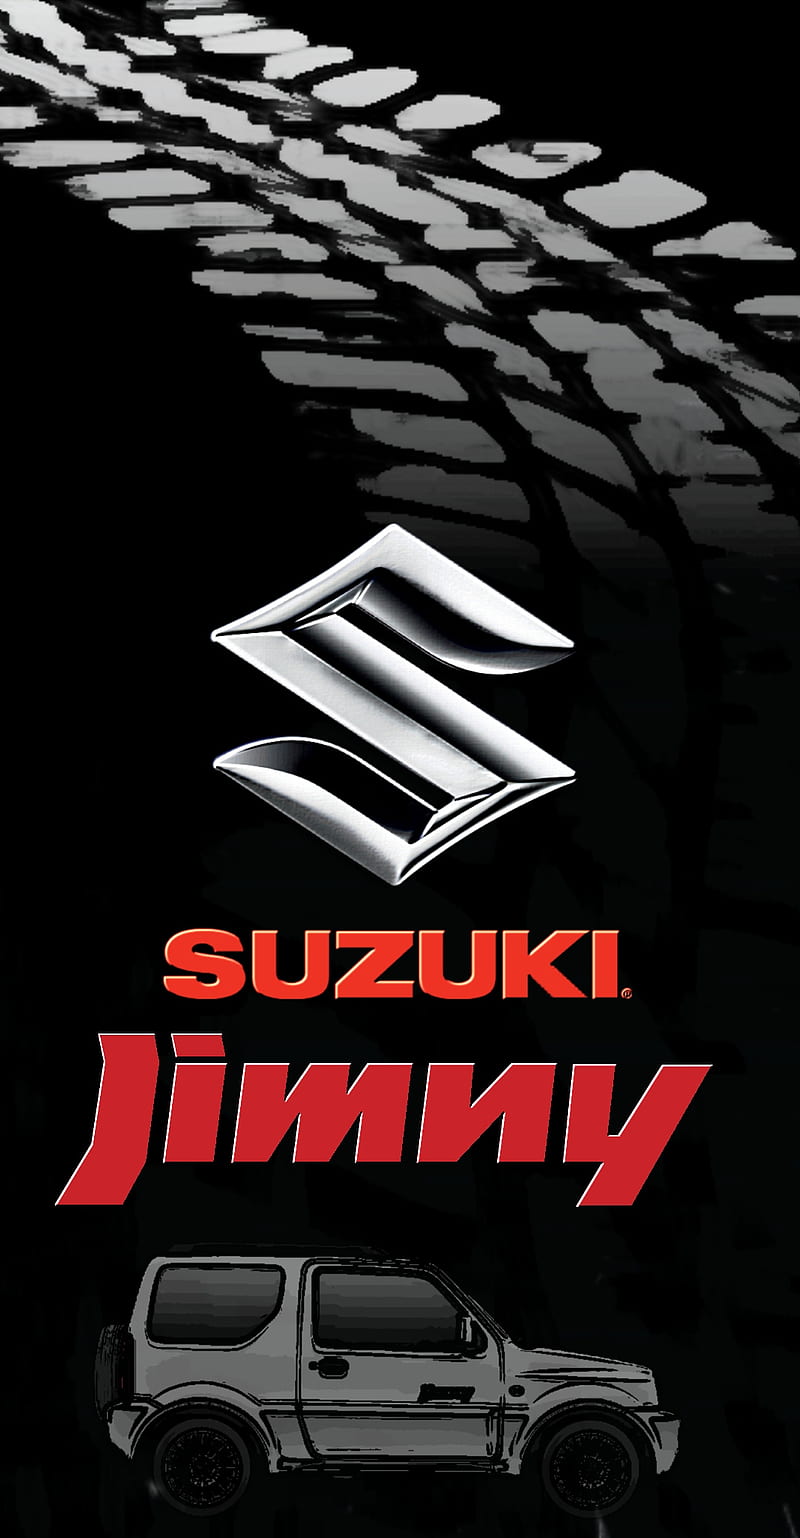 Suzuki Jimny 4x4 Jimmy Offroad Truck Hd Mobile Wallpaper Peakpx